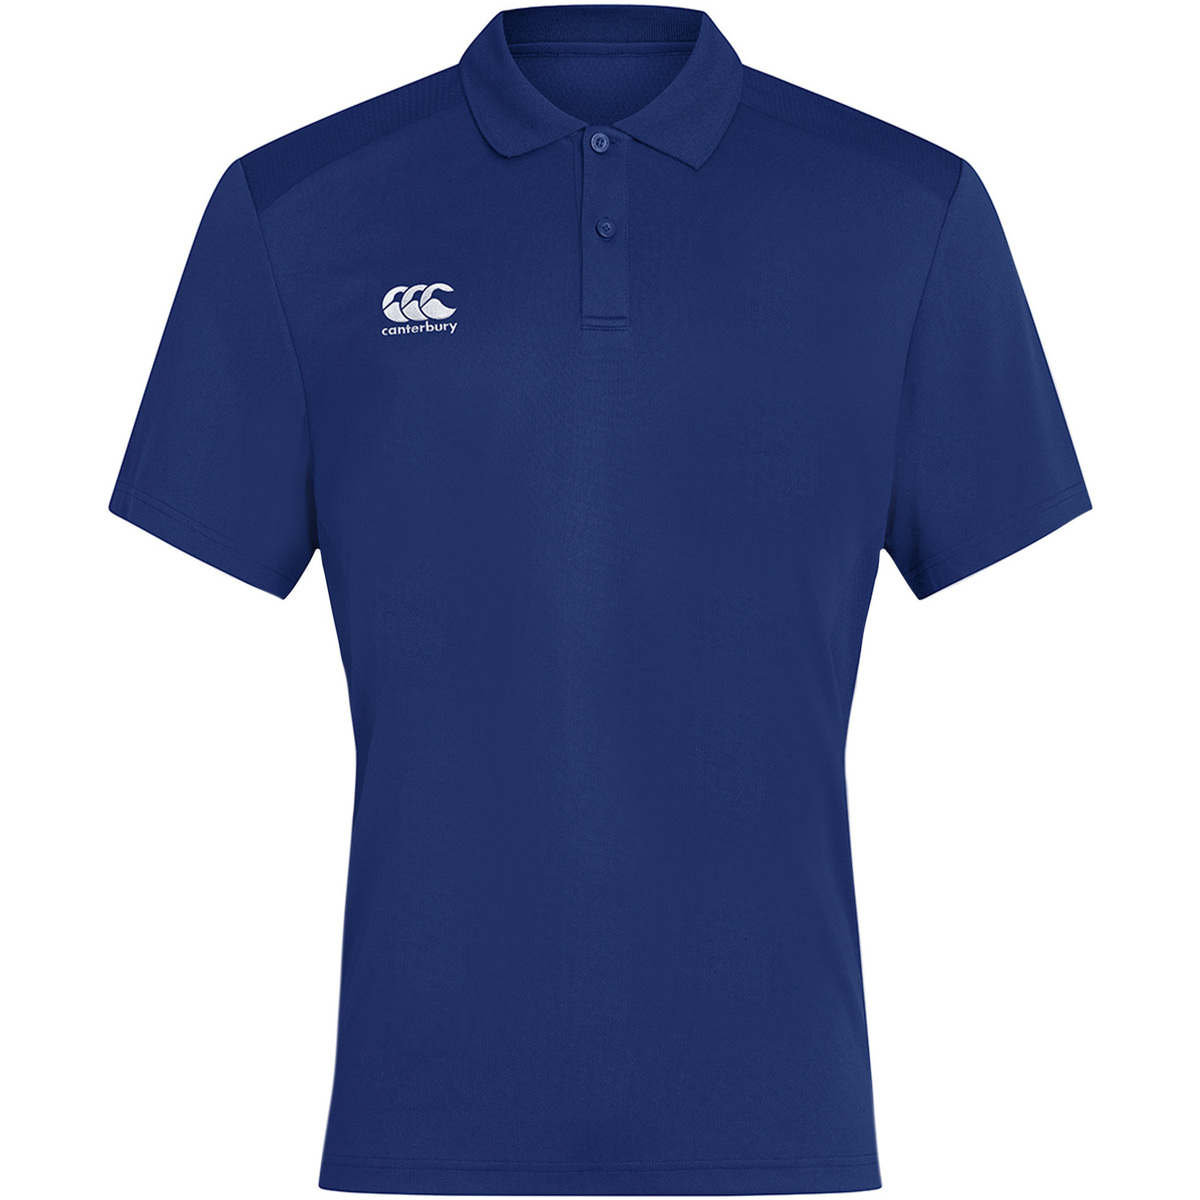 textil Hombre Tops y Camisetas Canterbury Club Dry Azul